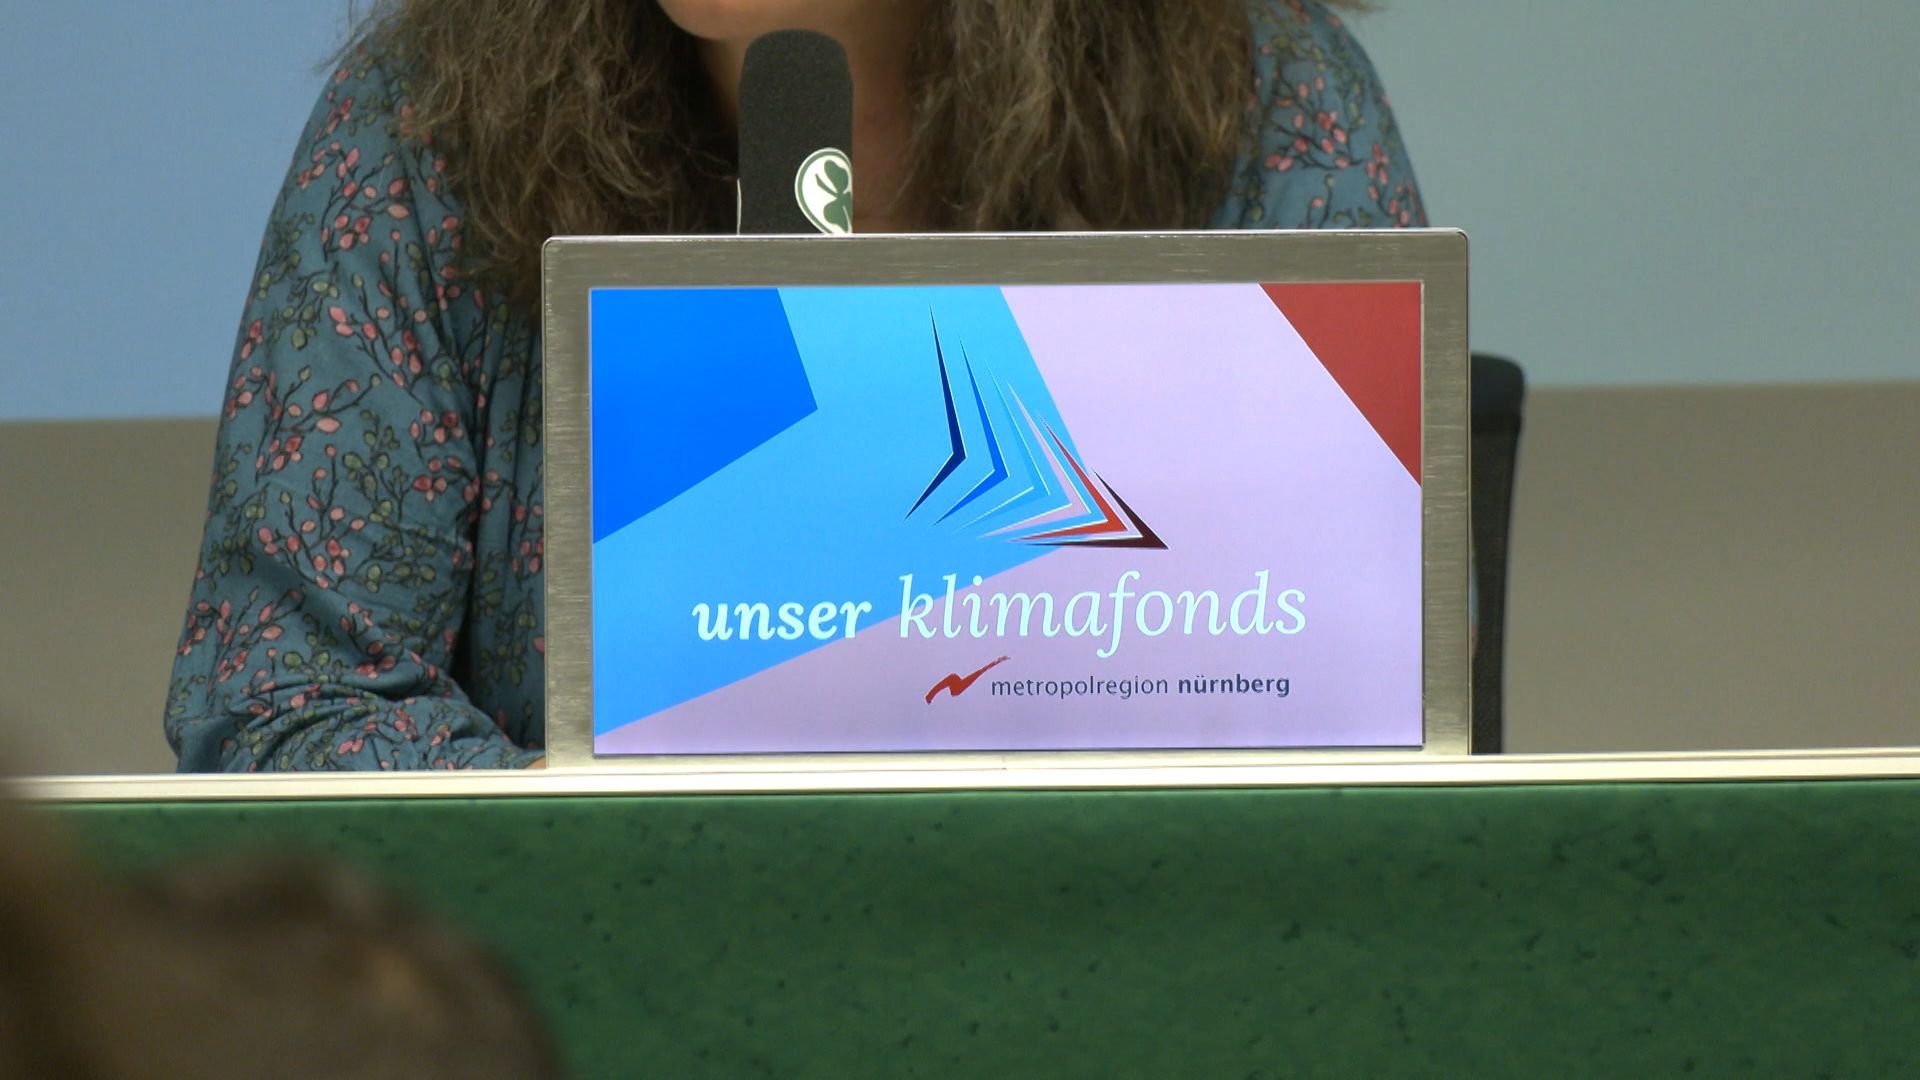 Metropolregion Nürnberg: Vorstellung des eigenen Klimafonds